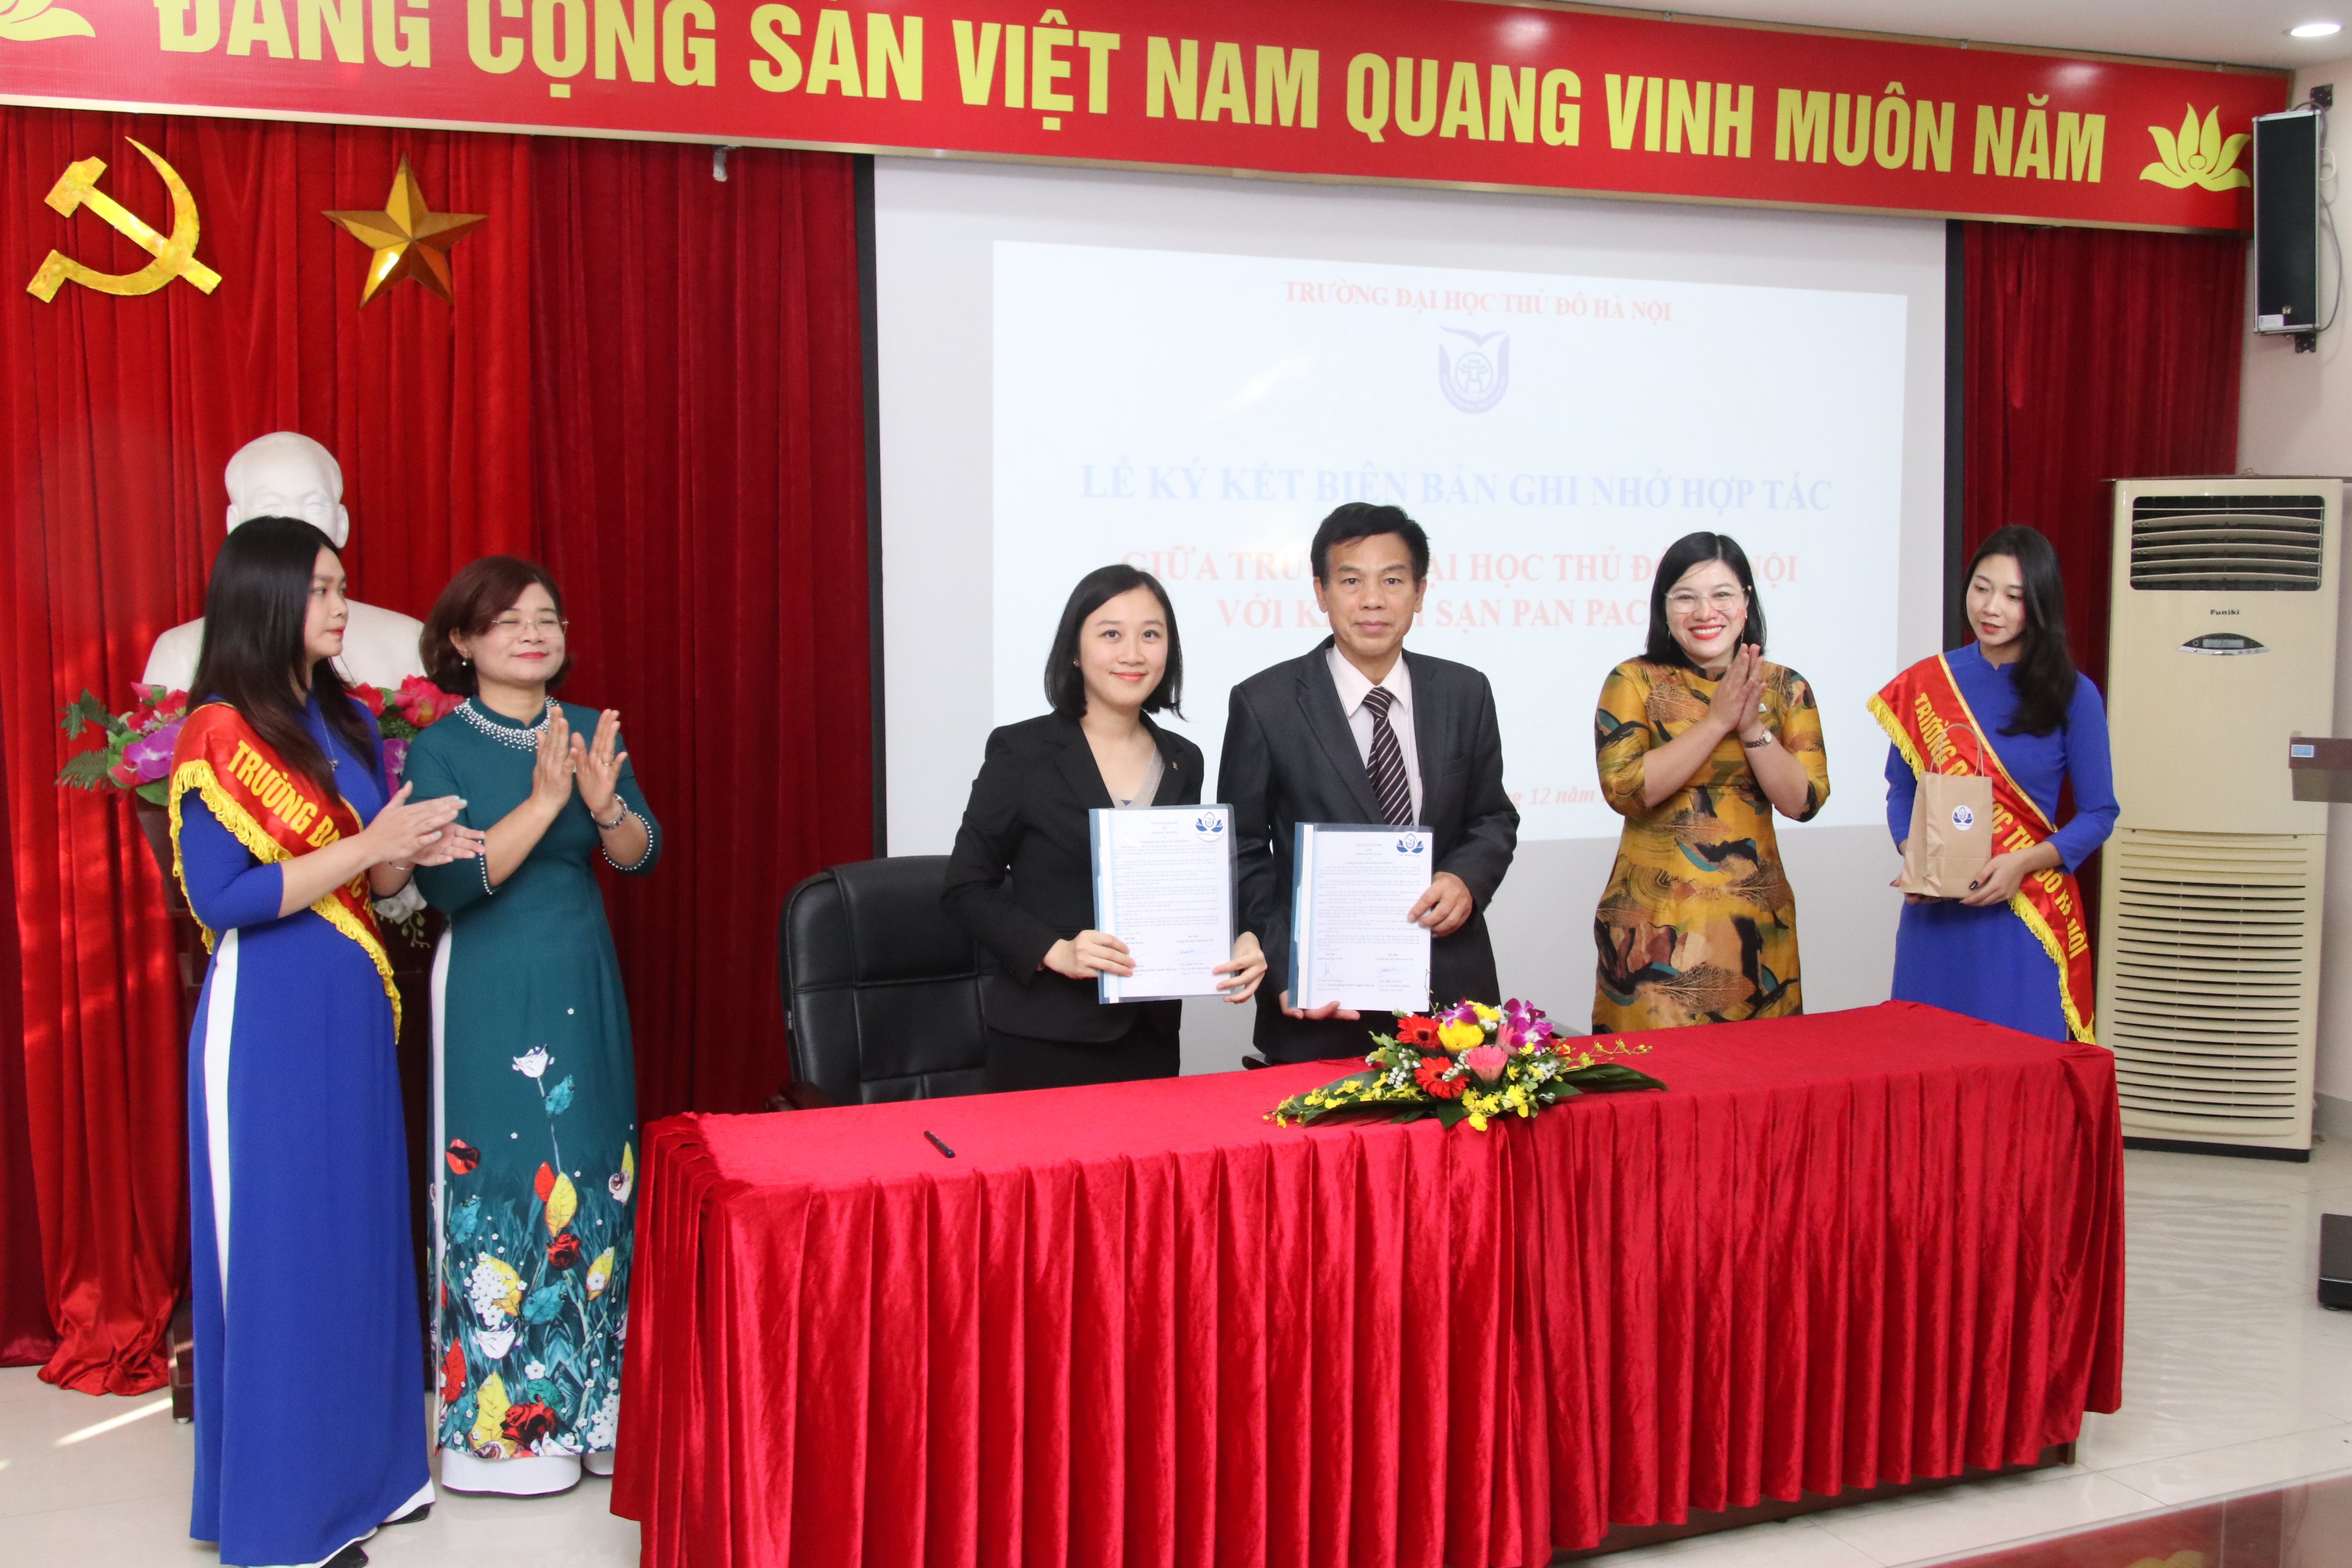 Trường Đại học Thủ đô Hà Nội ký kết hợp tác với các doanh nghiệp khách sạn và công ty du lịch